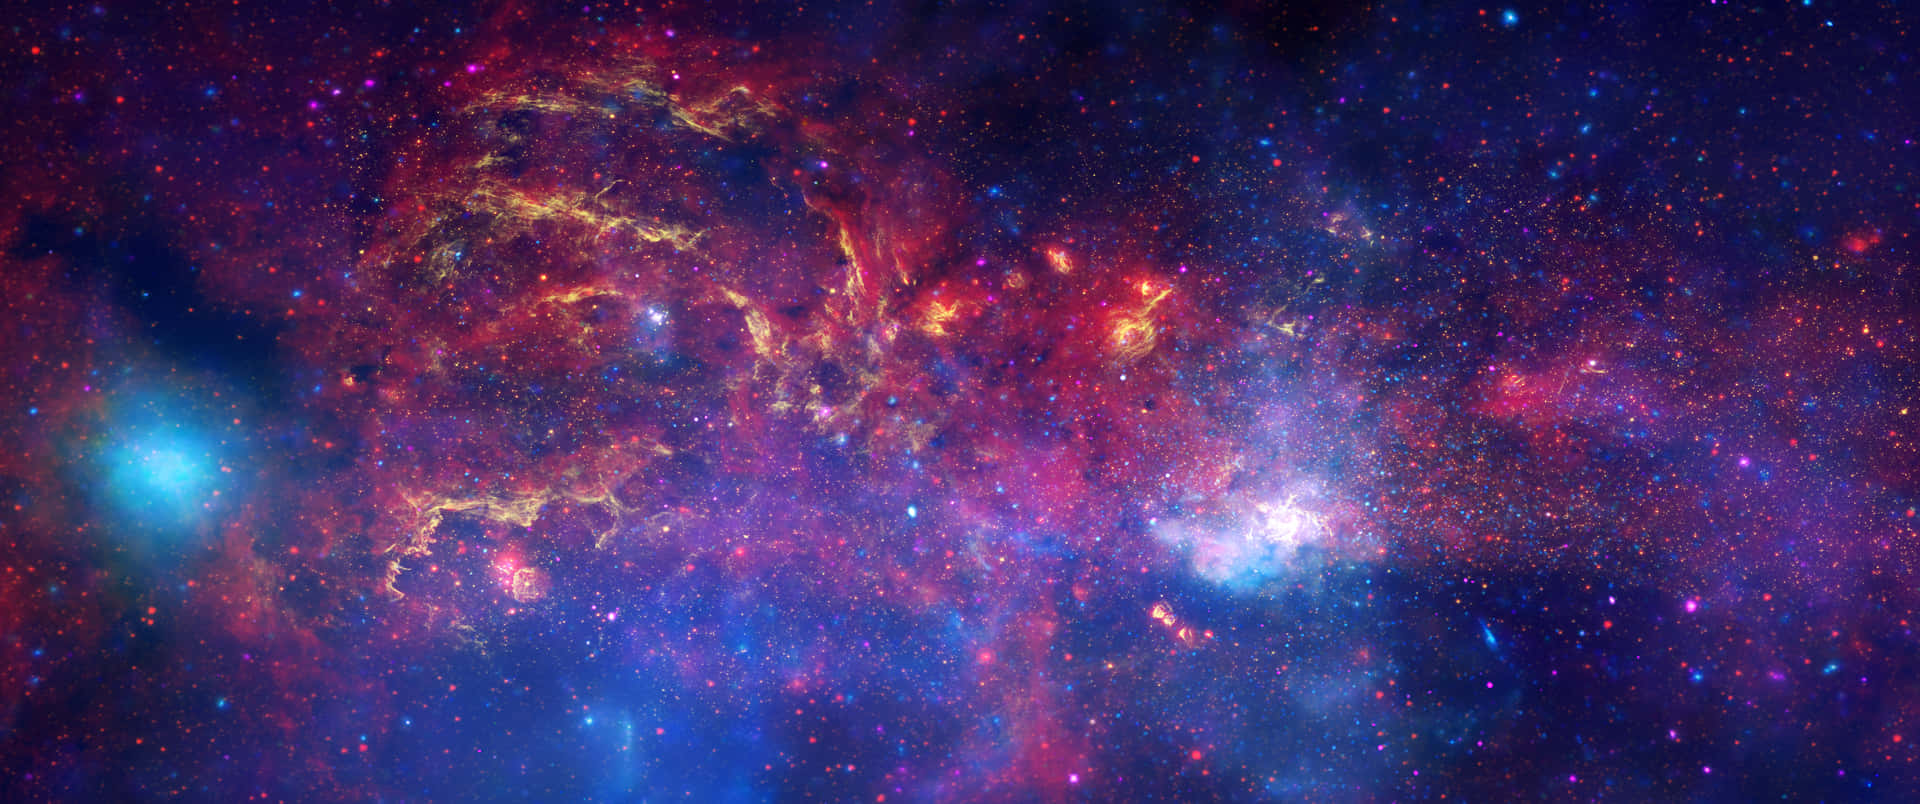 Unaimpresionante Imagen De Brillantes Estrellas En El Espacio Profundo. Fondo de pantalla